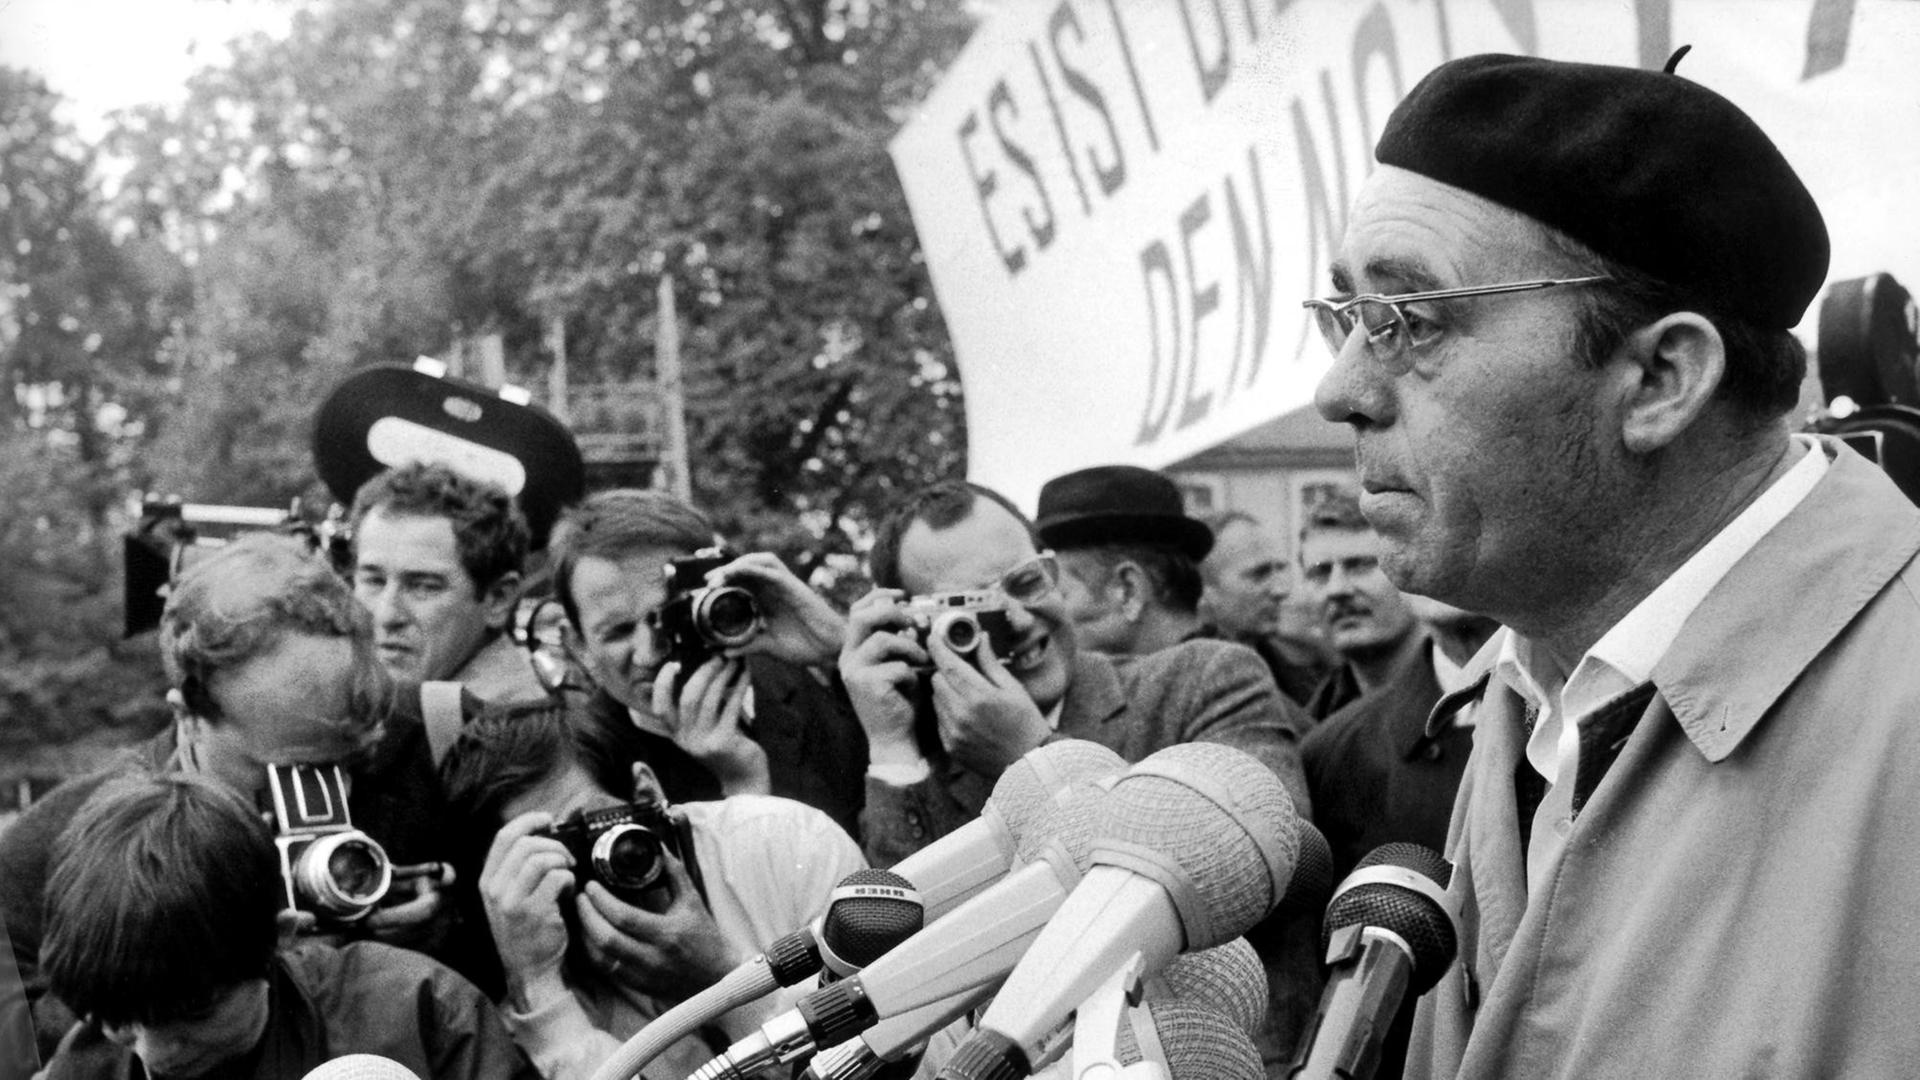 Der Schriftsteller Heinrich Böll spricht zu den Teilnehmern der Kundgebung im Bonner Hofgarten. Am 11. Mai 1968 fand in Bonn eine Großdemonstration gegen die Notstandsgesetze statt. Nach einem Sternmarsch versammelten sich die Demonstranten zu einer Kundgebung im Bonner Hofgarten.